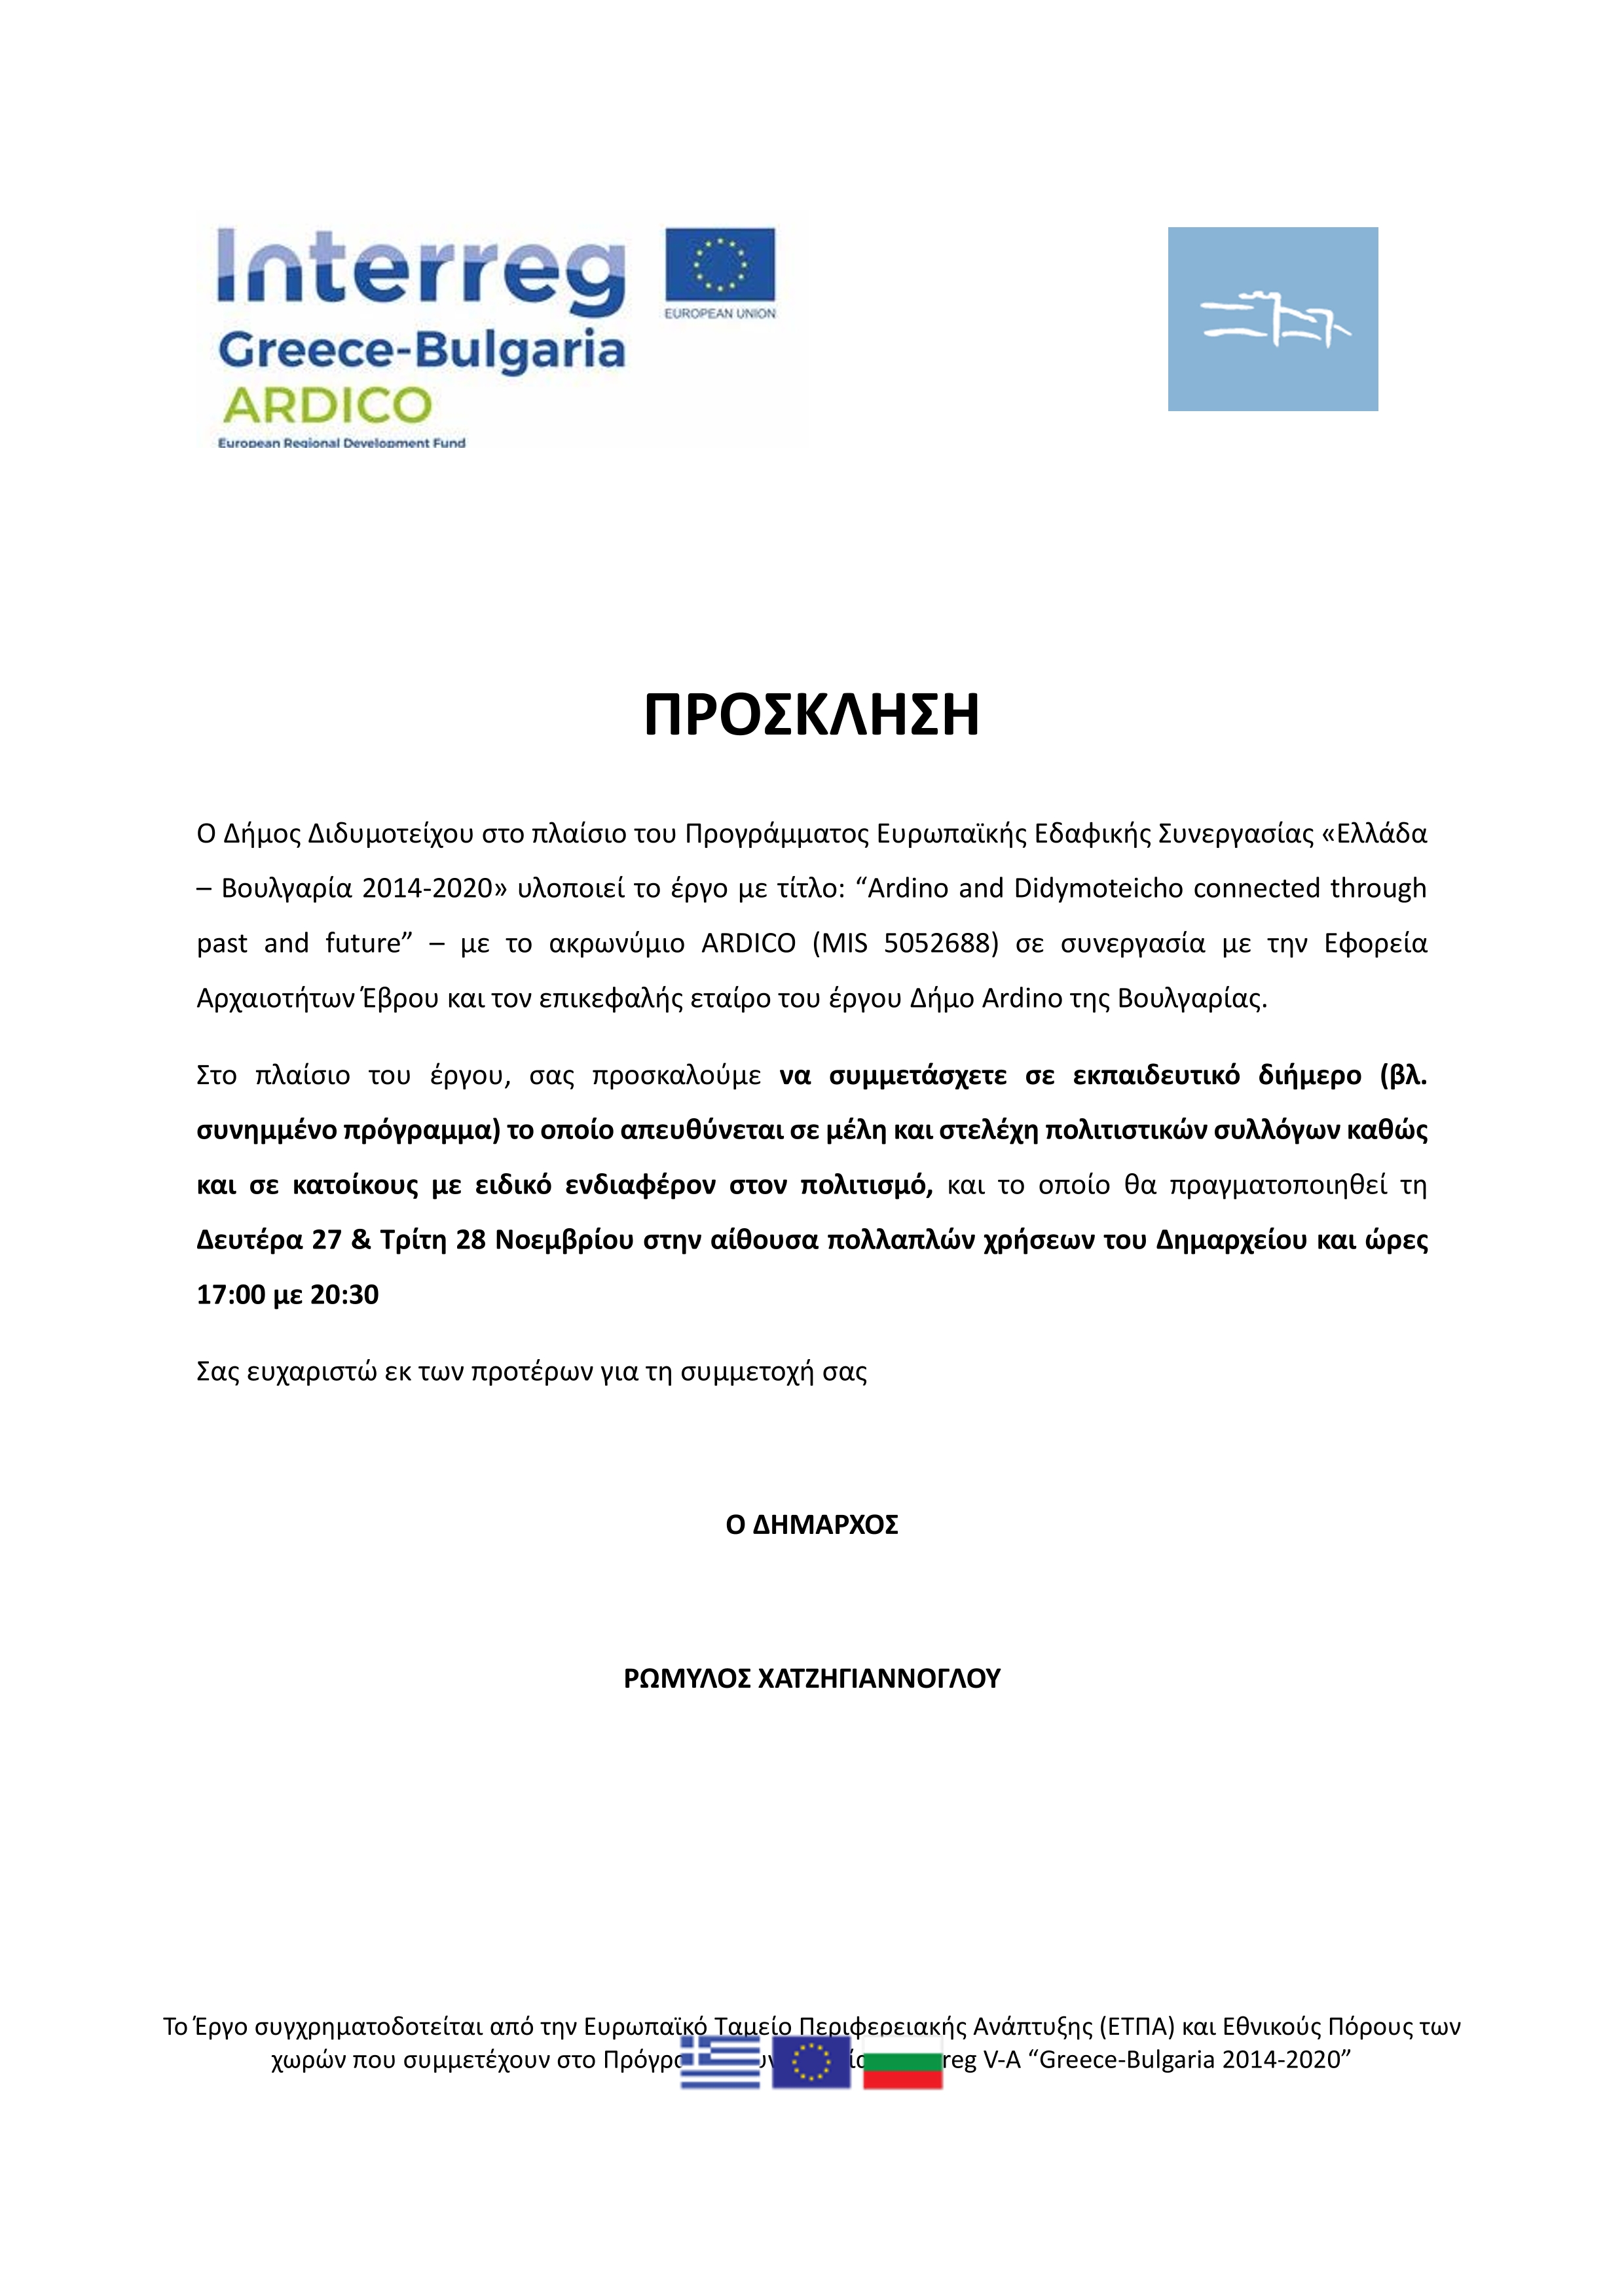 «Ελλάδα – Βουλγαρία 2014-2020» - Εκπαιδευτικό διήμερο (βλ. συνημμένο πρόγραμμα) το οποίο απευθύνεται σε μέλη και στελέχη πολιτιστικών συλλόγων καθώς και σε κατοίκους με ειδικό ενδιαφέρον στον πολιτισμό